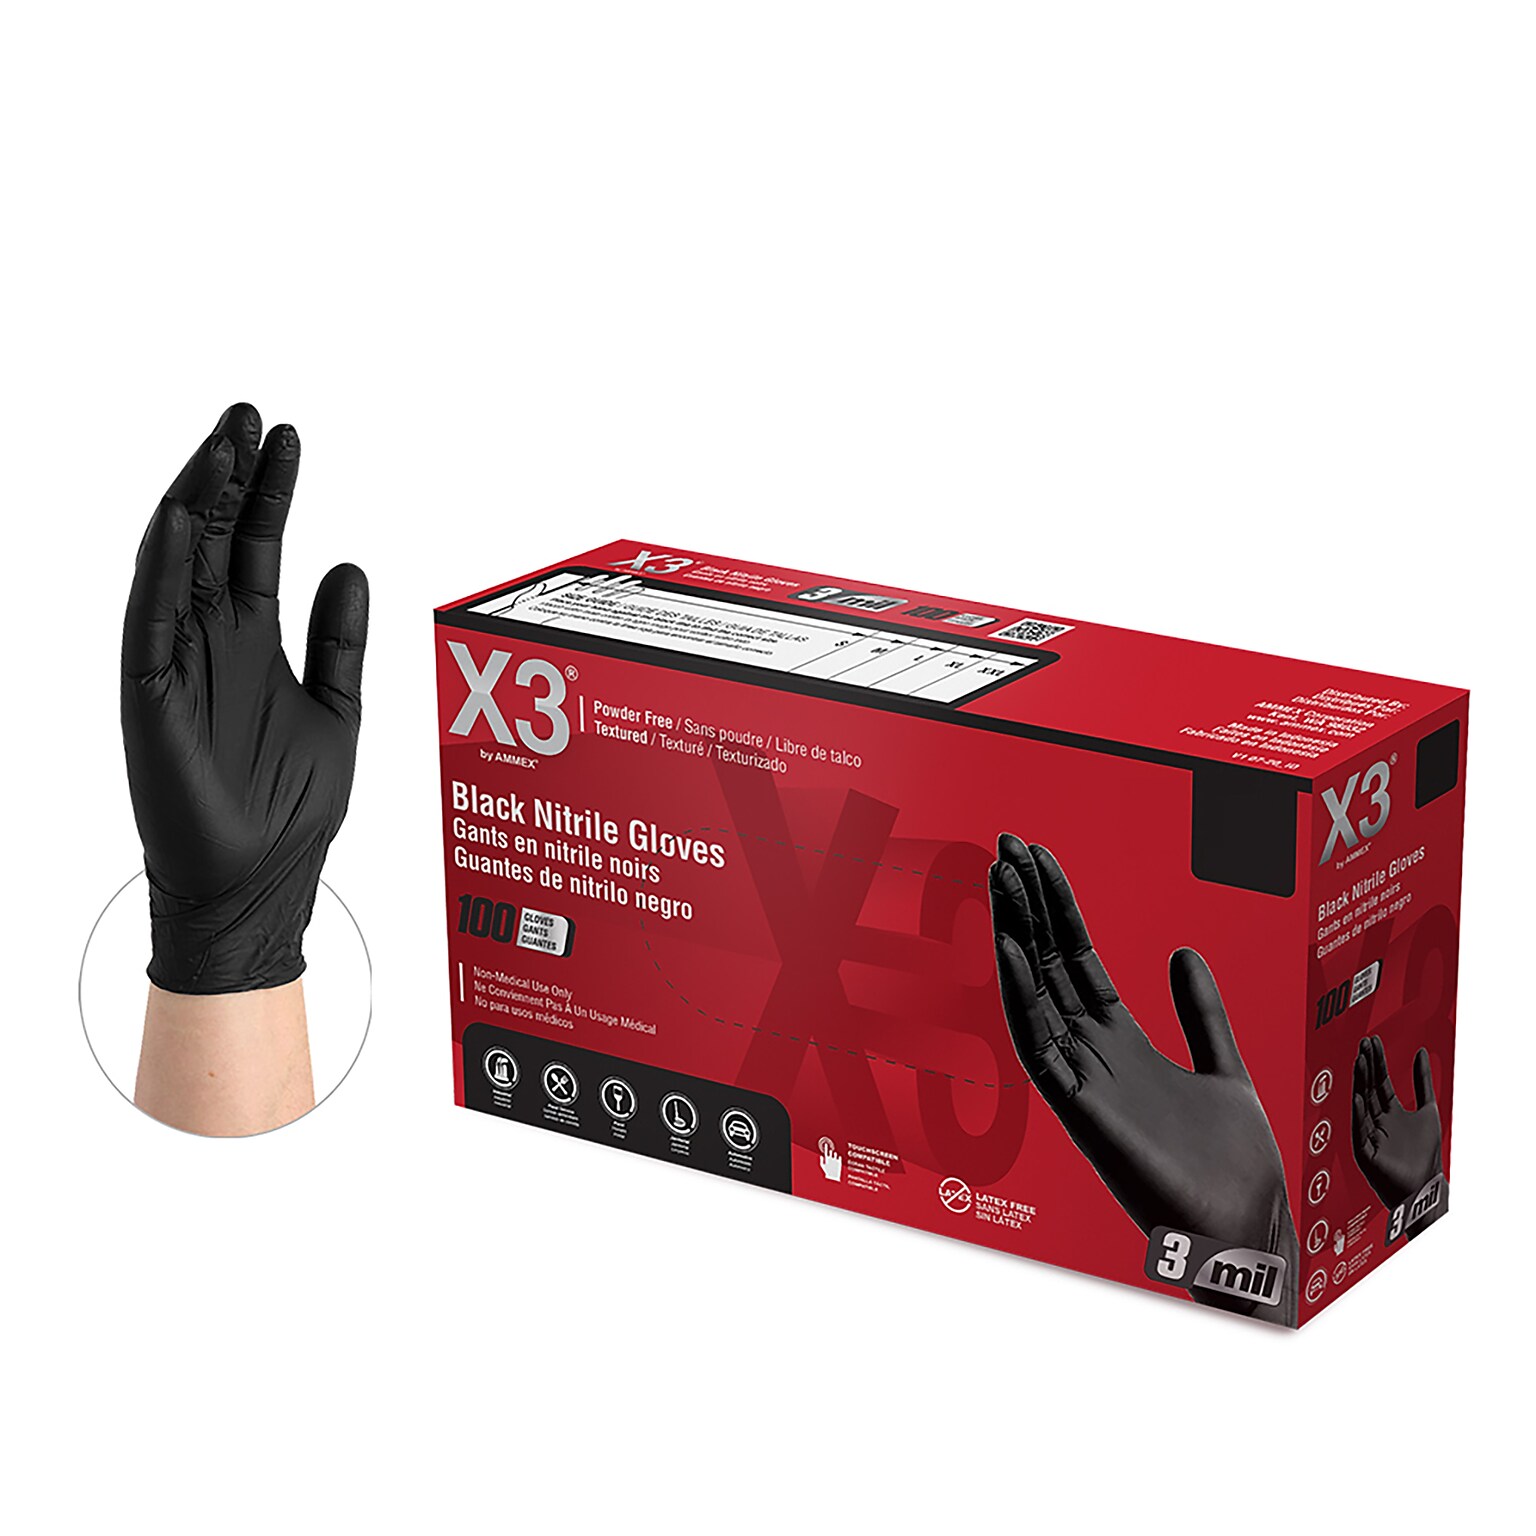 X3 Powder-Free Nitrile Gloves, Latex Free, Small, Black, 100/Box (BX342100)